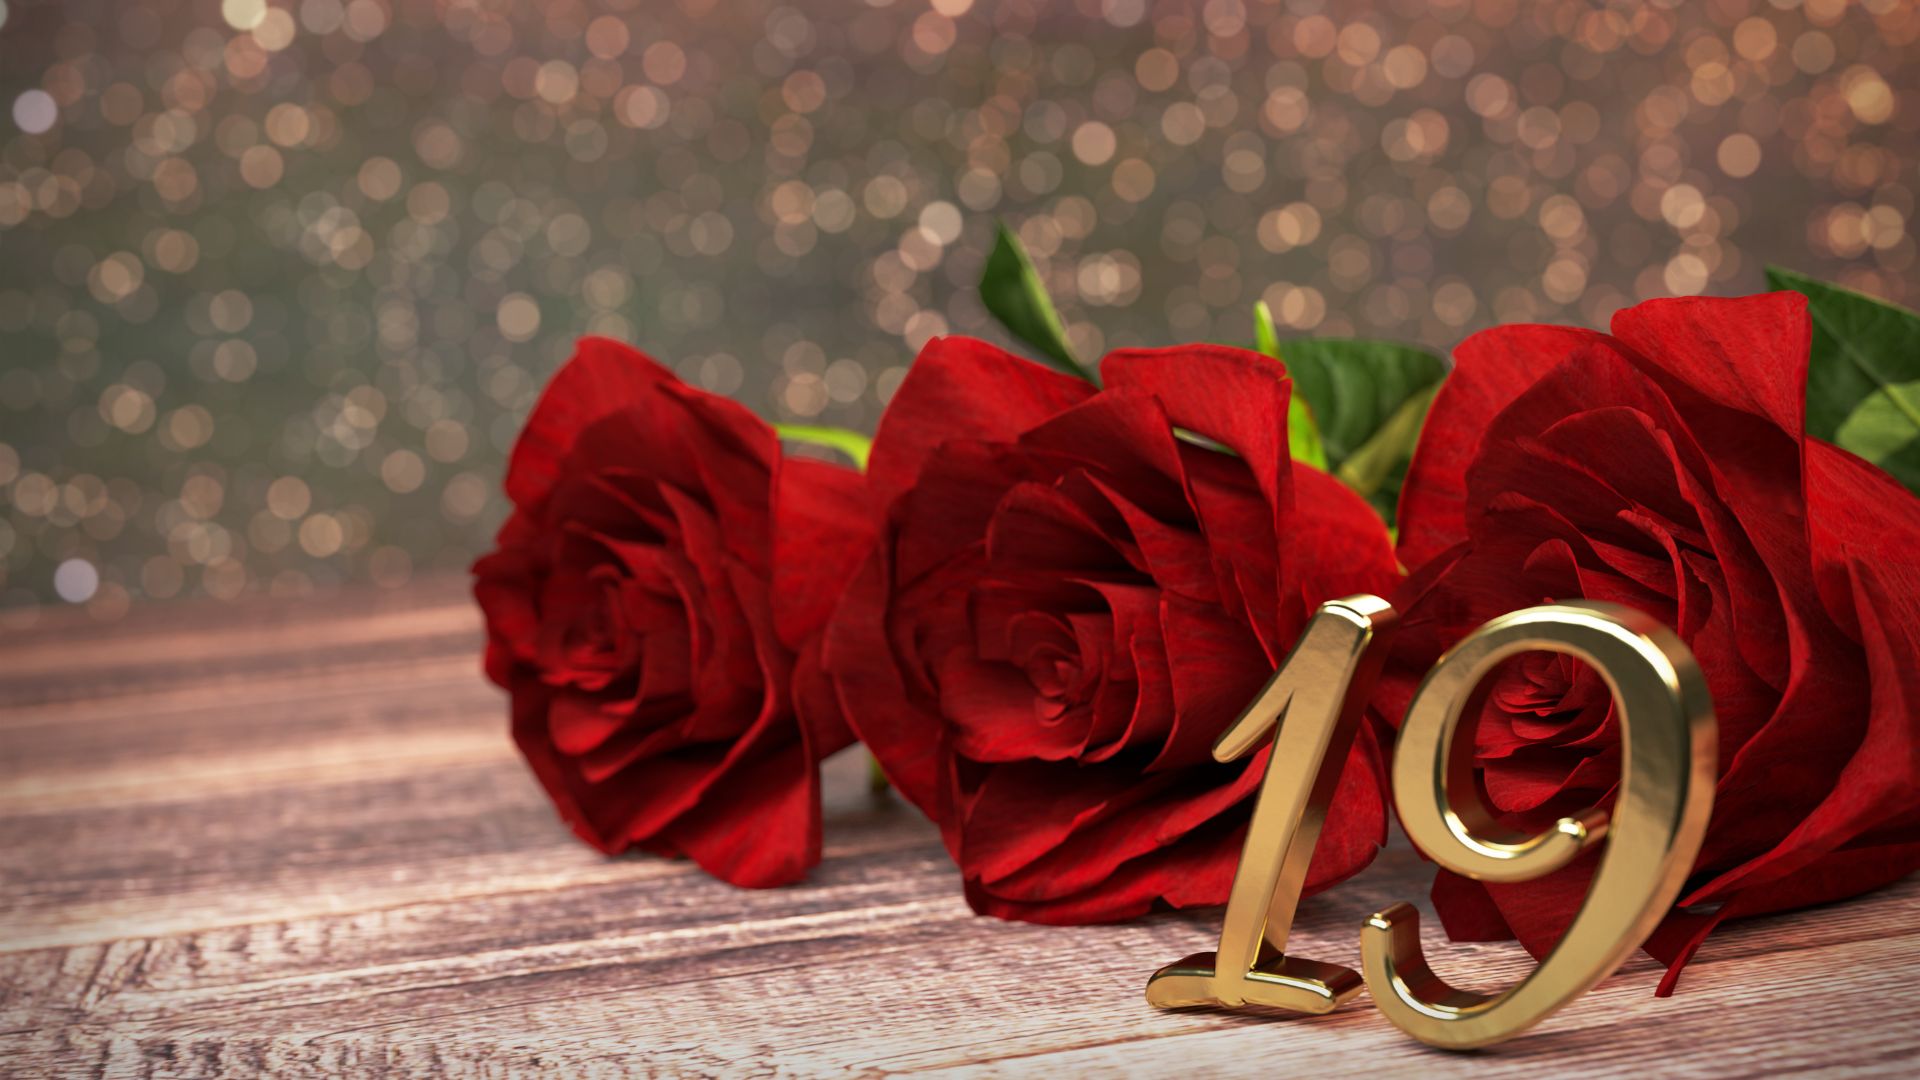 Imagem de rosas vermelhas em cima de uma mesa de madeira e o número 19 na cor dourada em formato de vela de aniversário